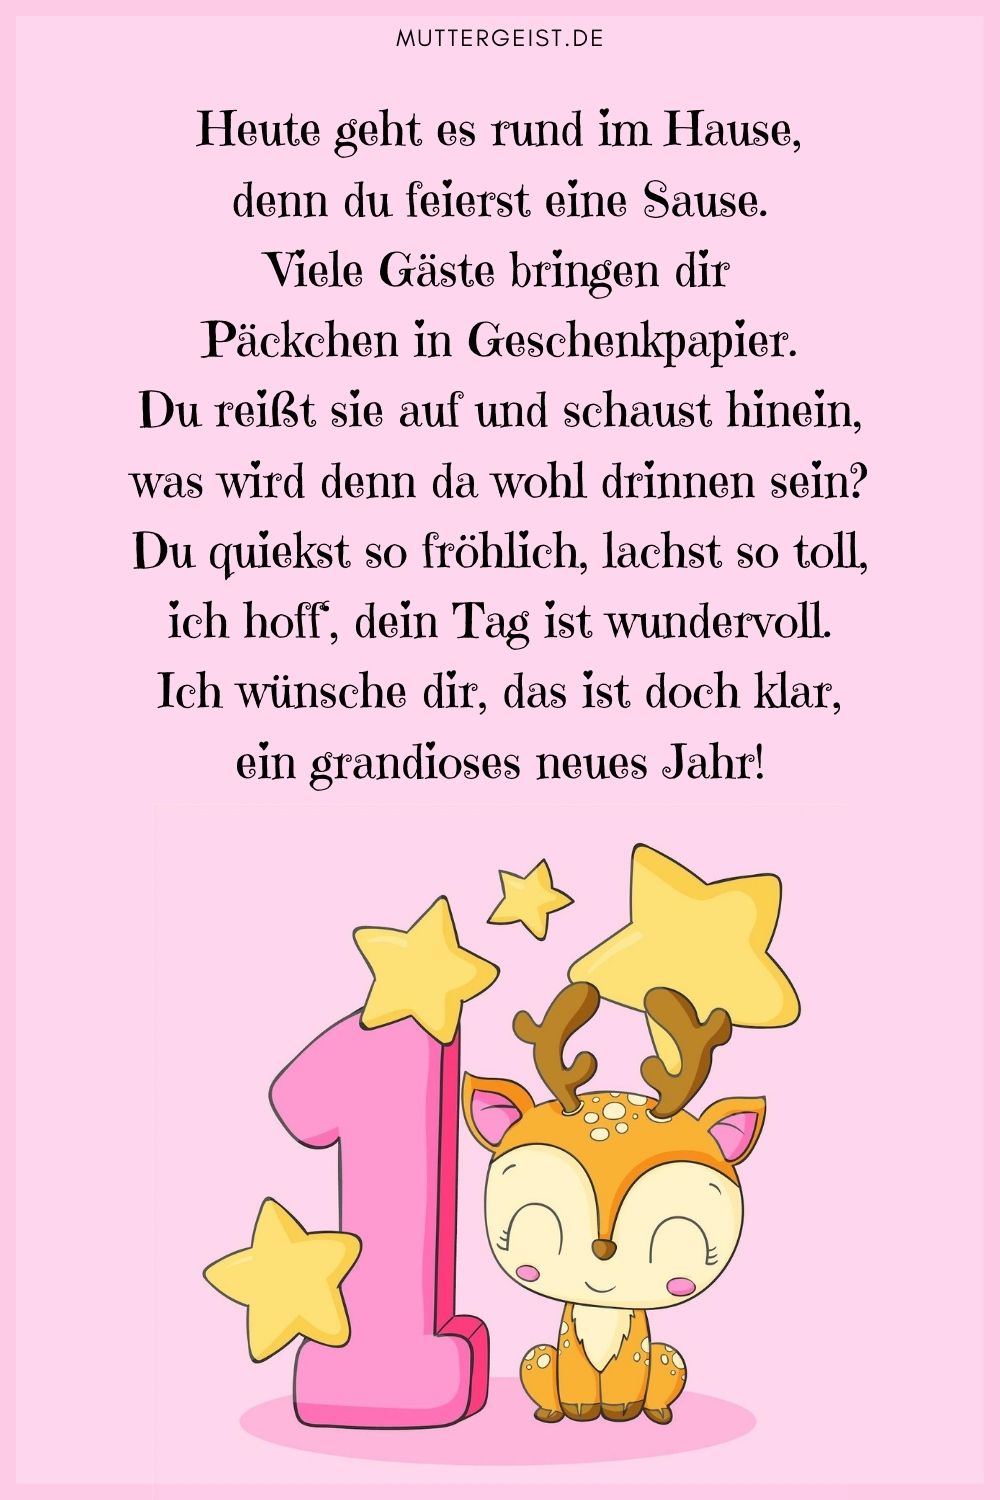 süßes Geburtstagsgedicht für ein Kind